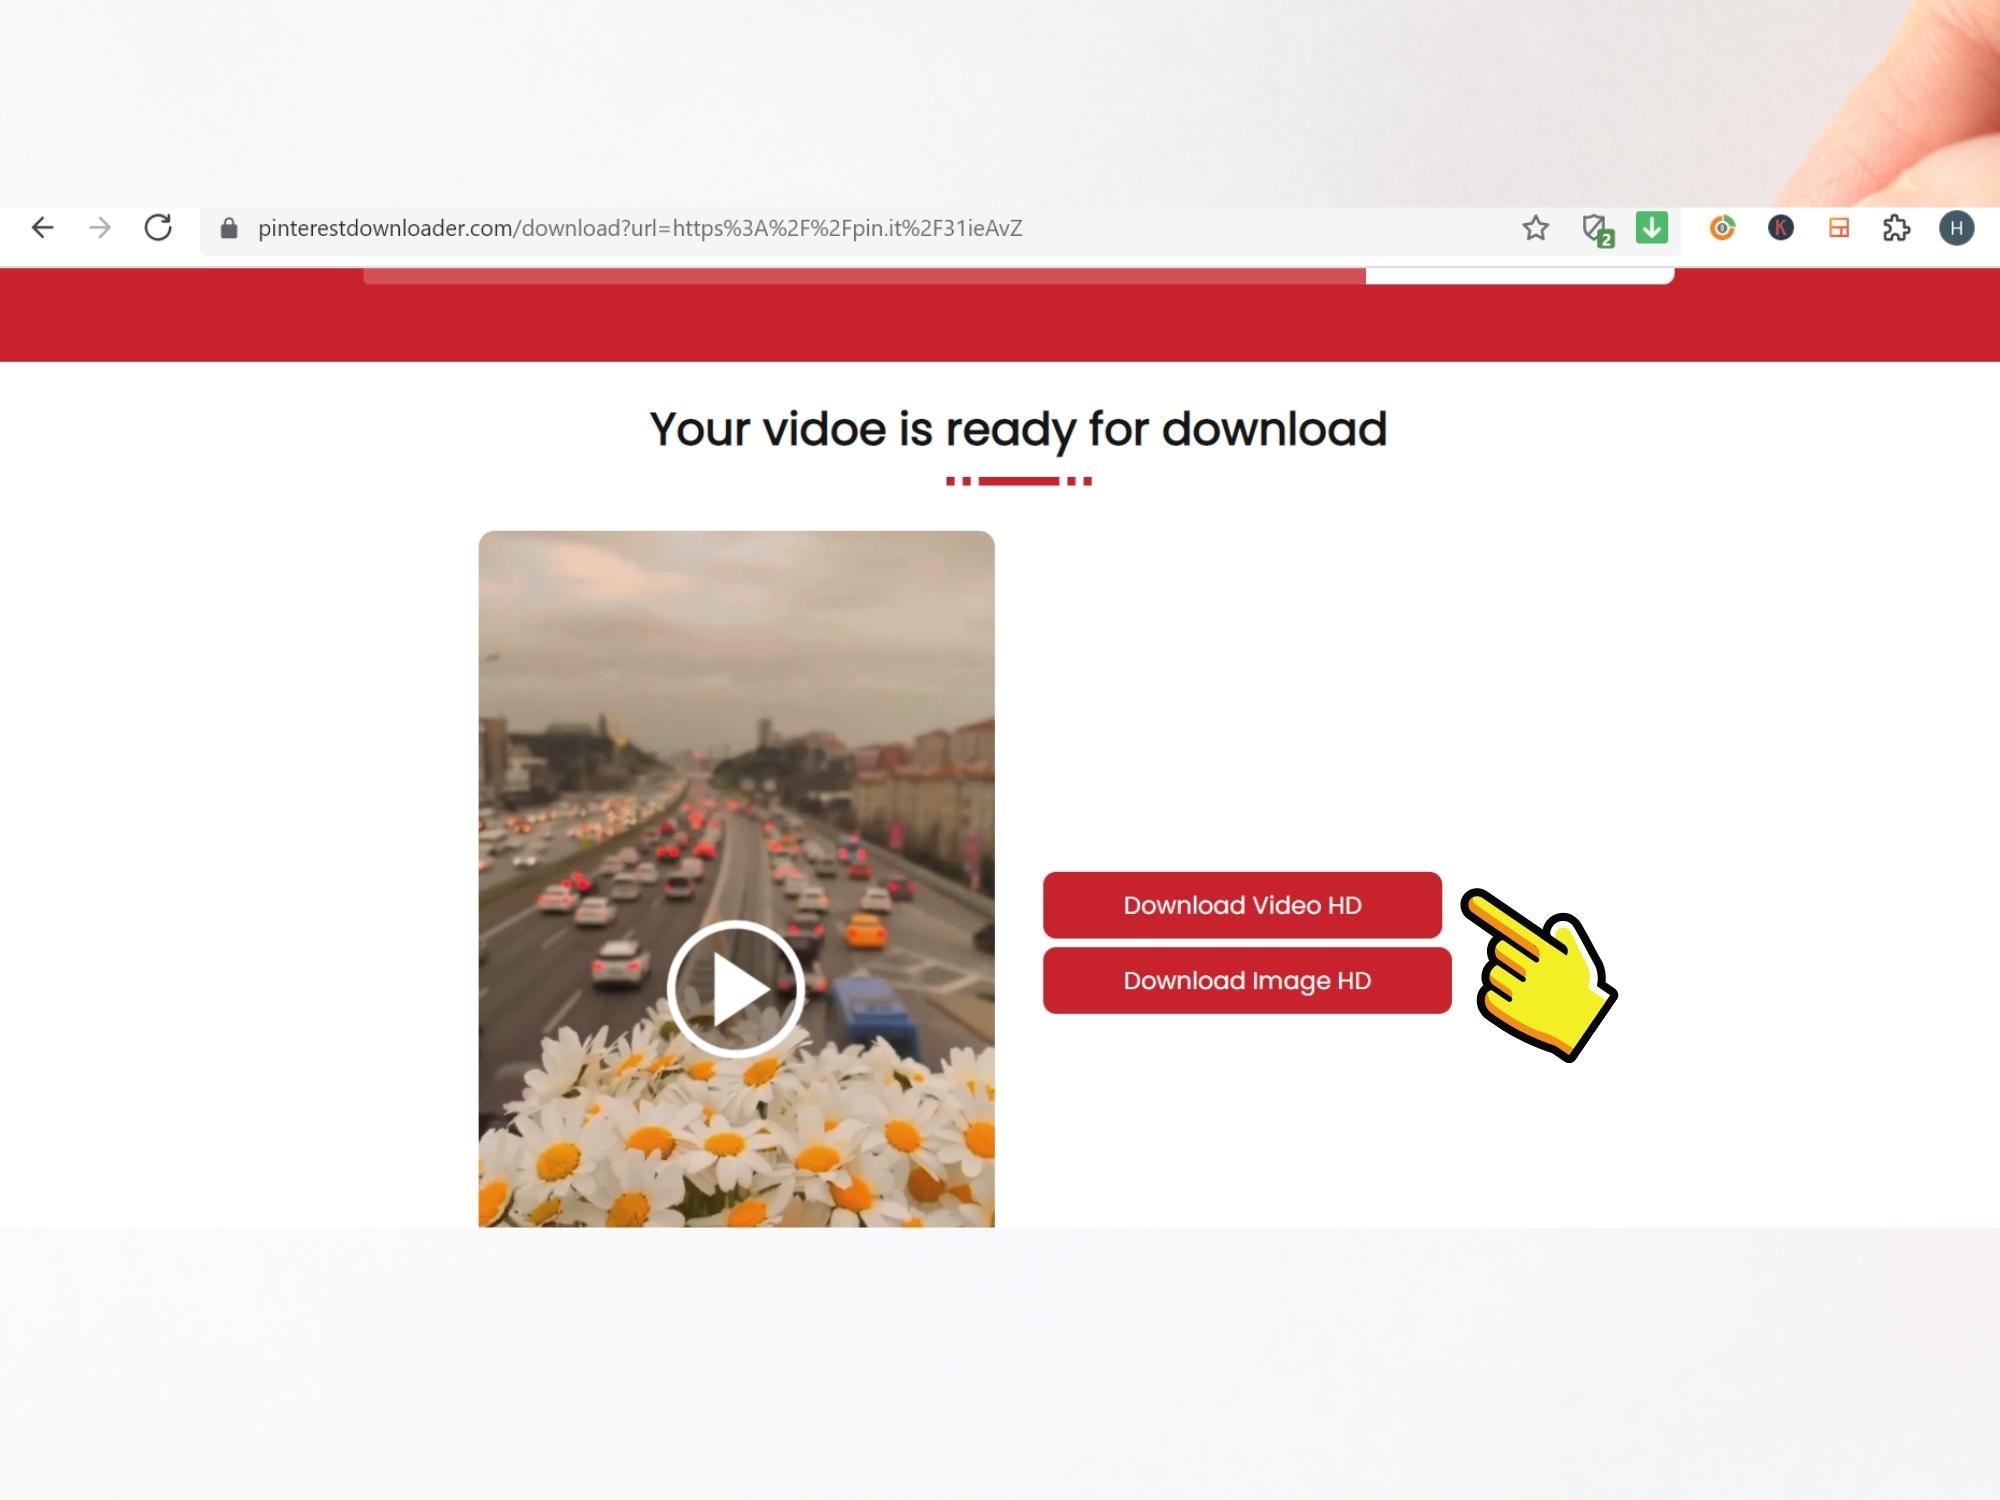 Sforum - Trang thông tin công nghệ mới nhất 20-1 Hướng dẫn cách tải video Pinterest về điện thoại và máy tính trong tích tắc 